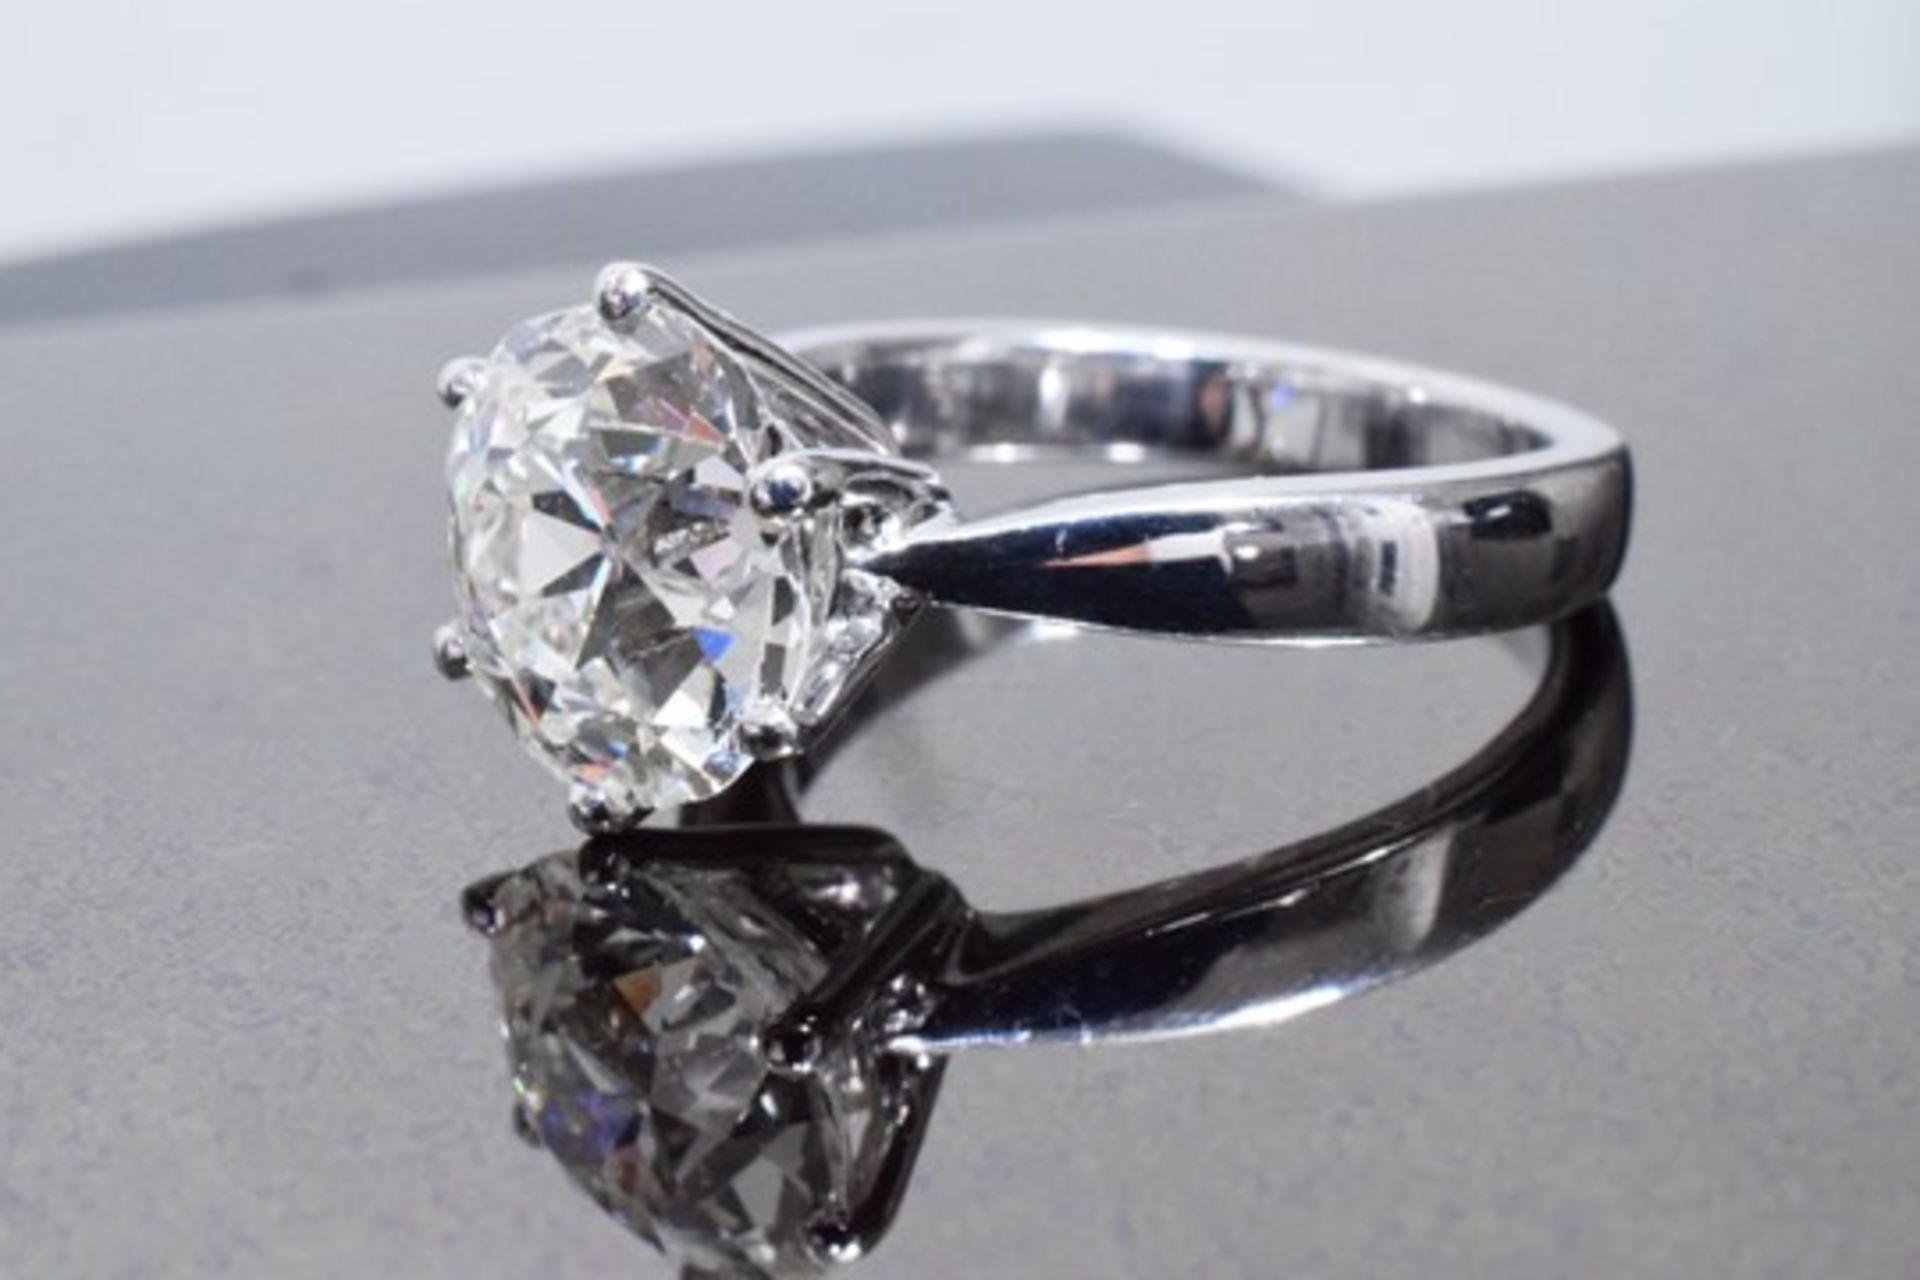 3.70 Carat Diamond Ring Set in White Gold - Image 5 of 8